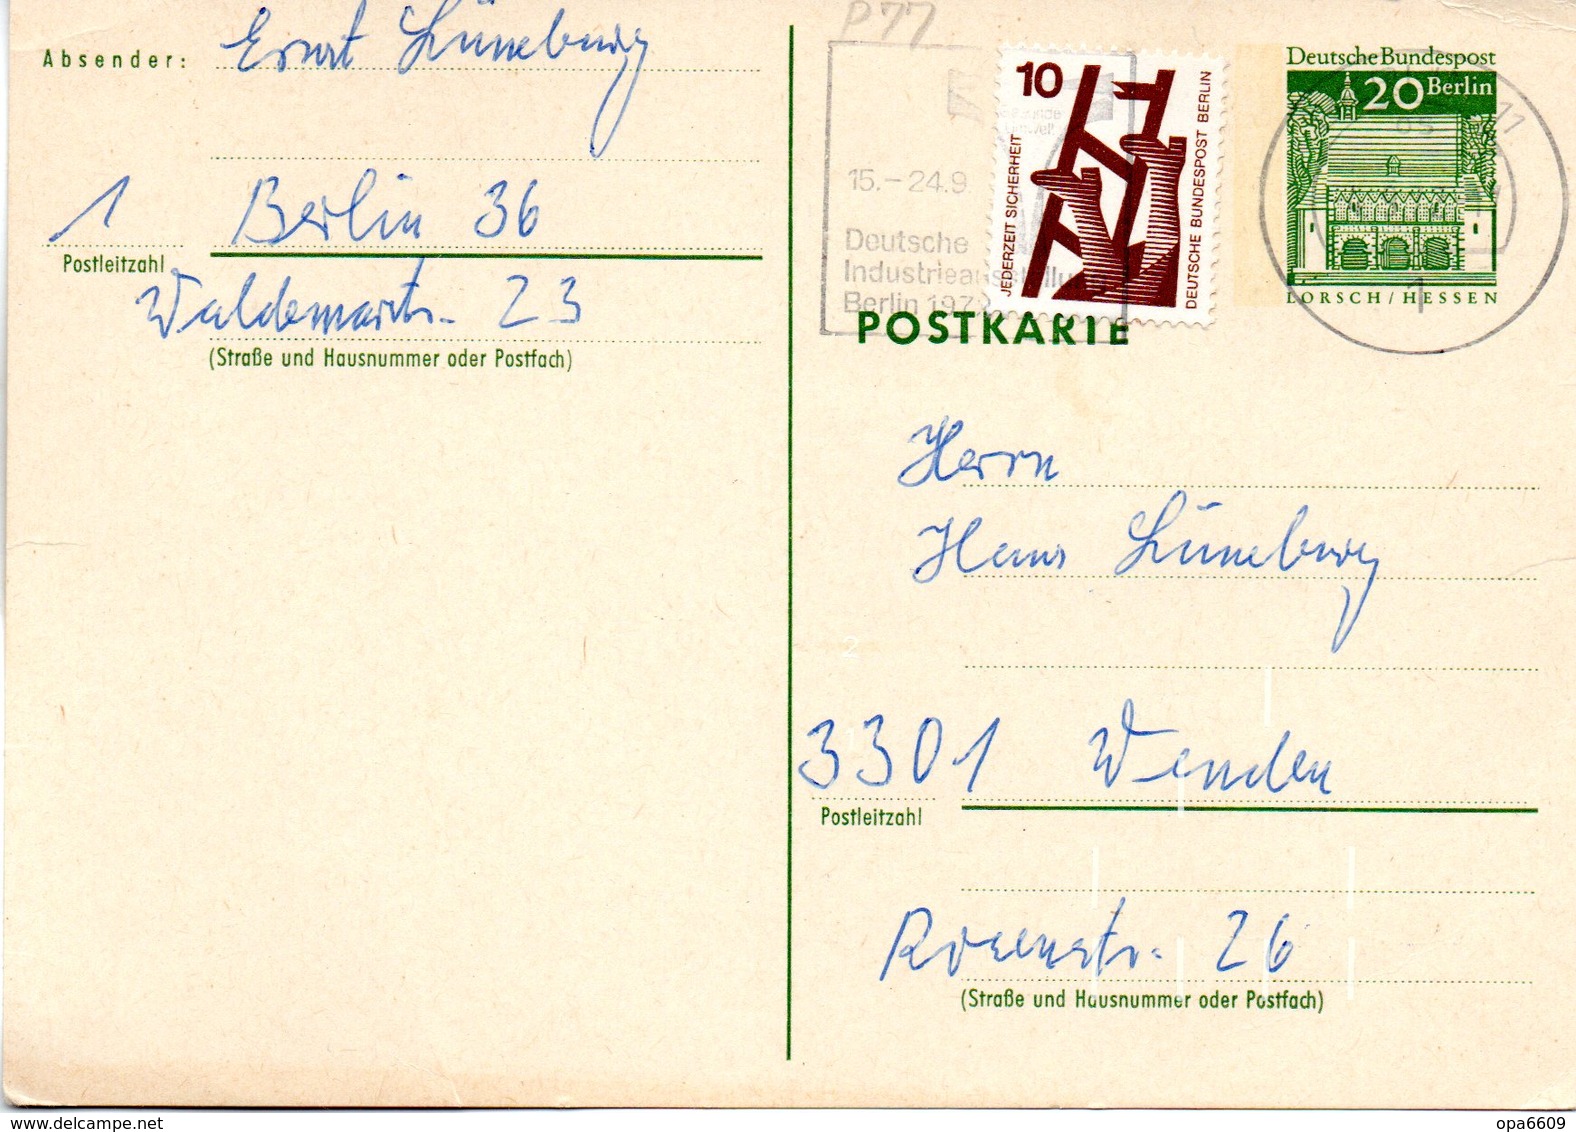 WB Amtl. Ganzsachen-Postkarte P77 ZF Wst. "Torhalle In Lorsch" 20(Pf) Grün, MWSt 4.9.72 BERLIN - Postkarten - Gebraucht